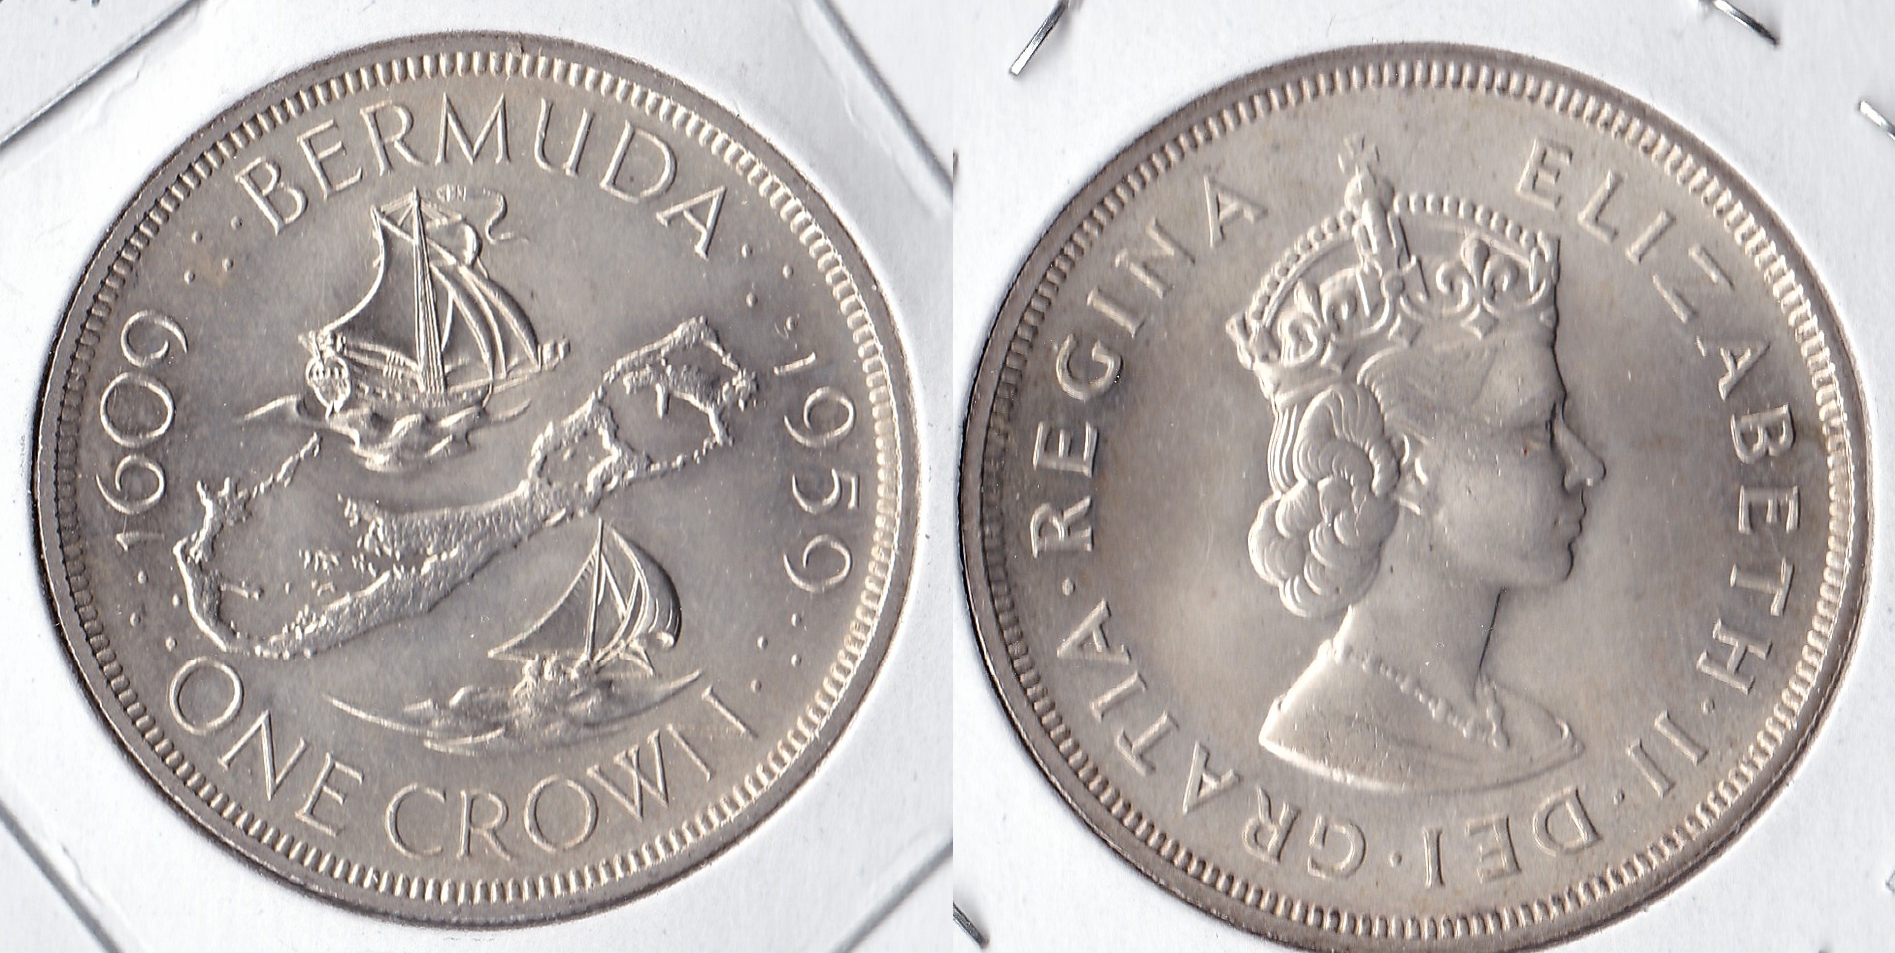 1959 bermuda 1 crown.jpg